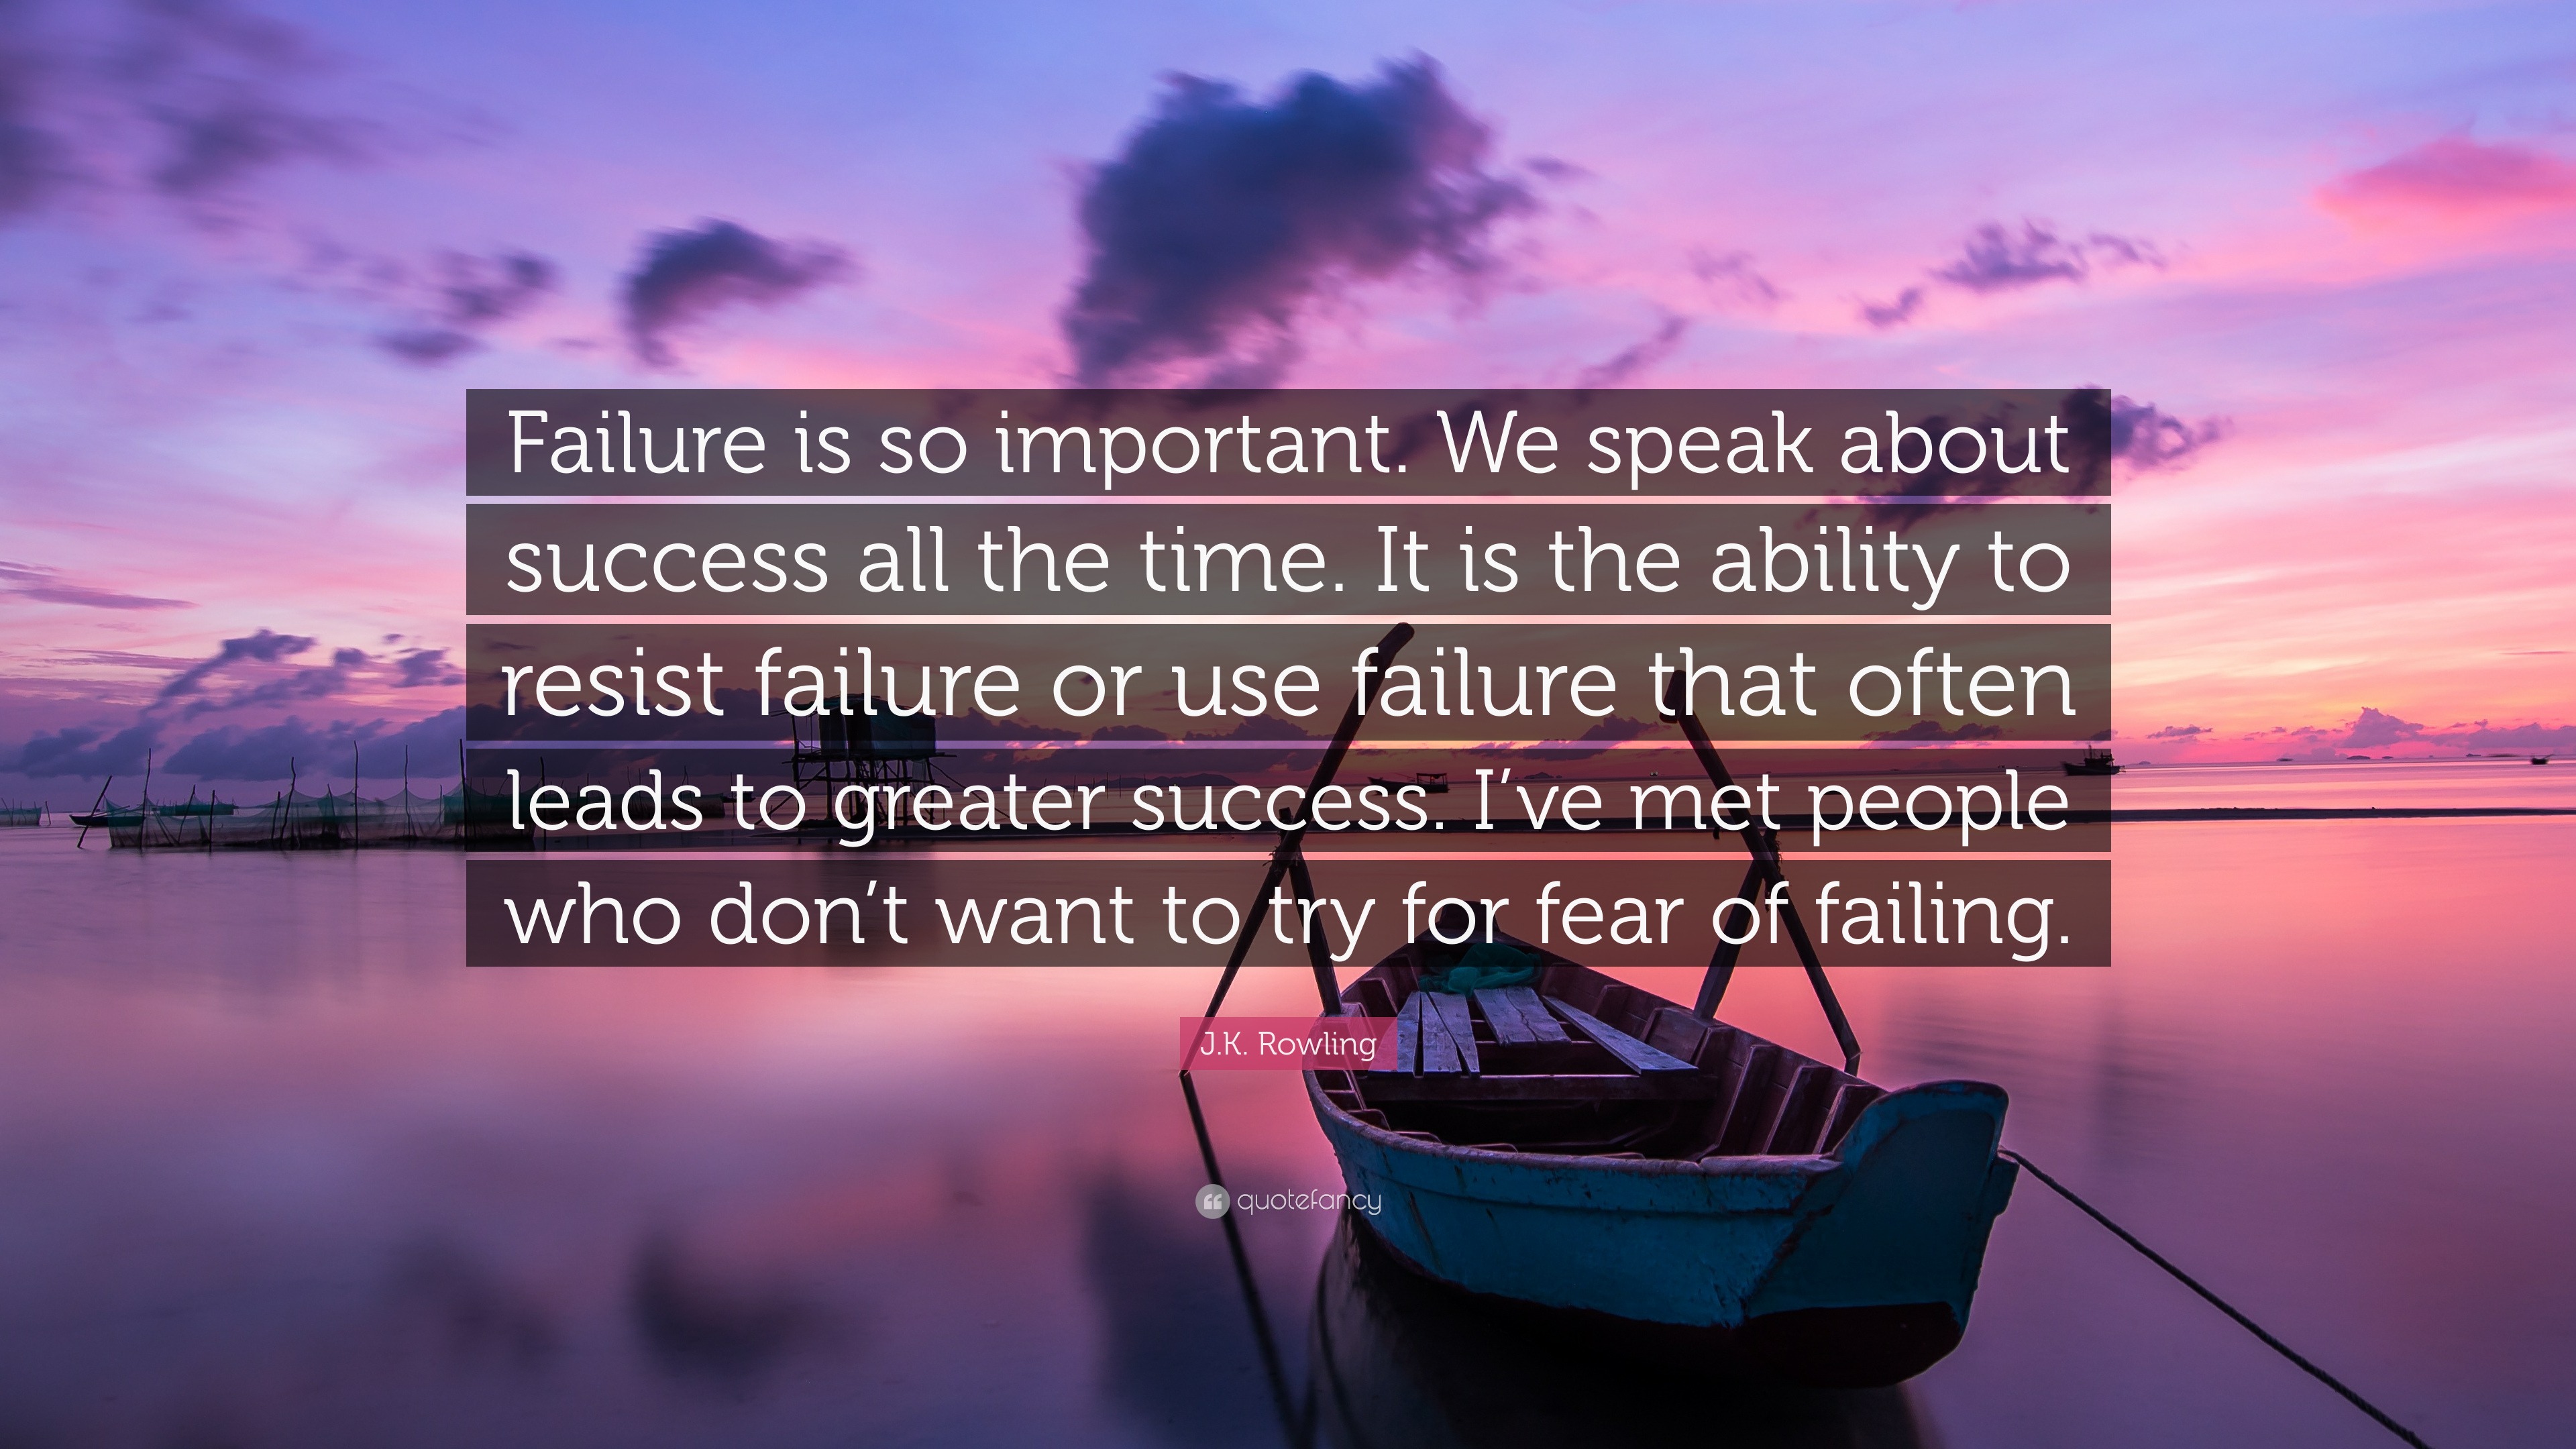 a short speech on failure